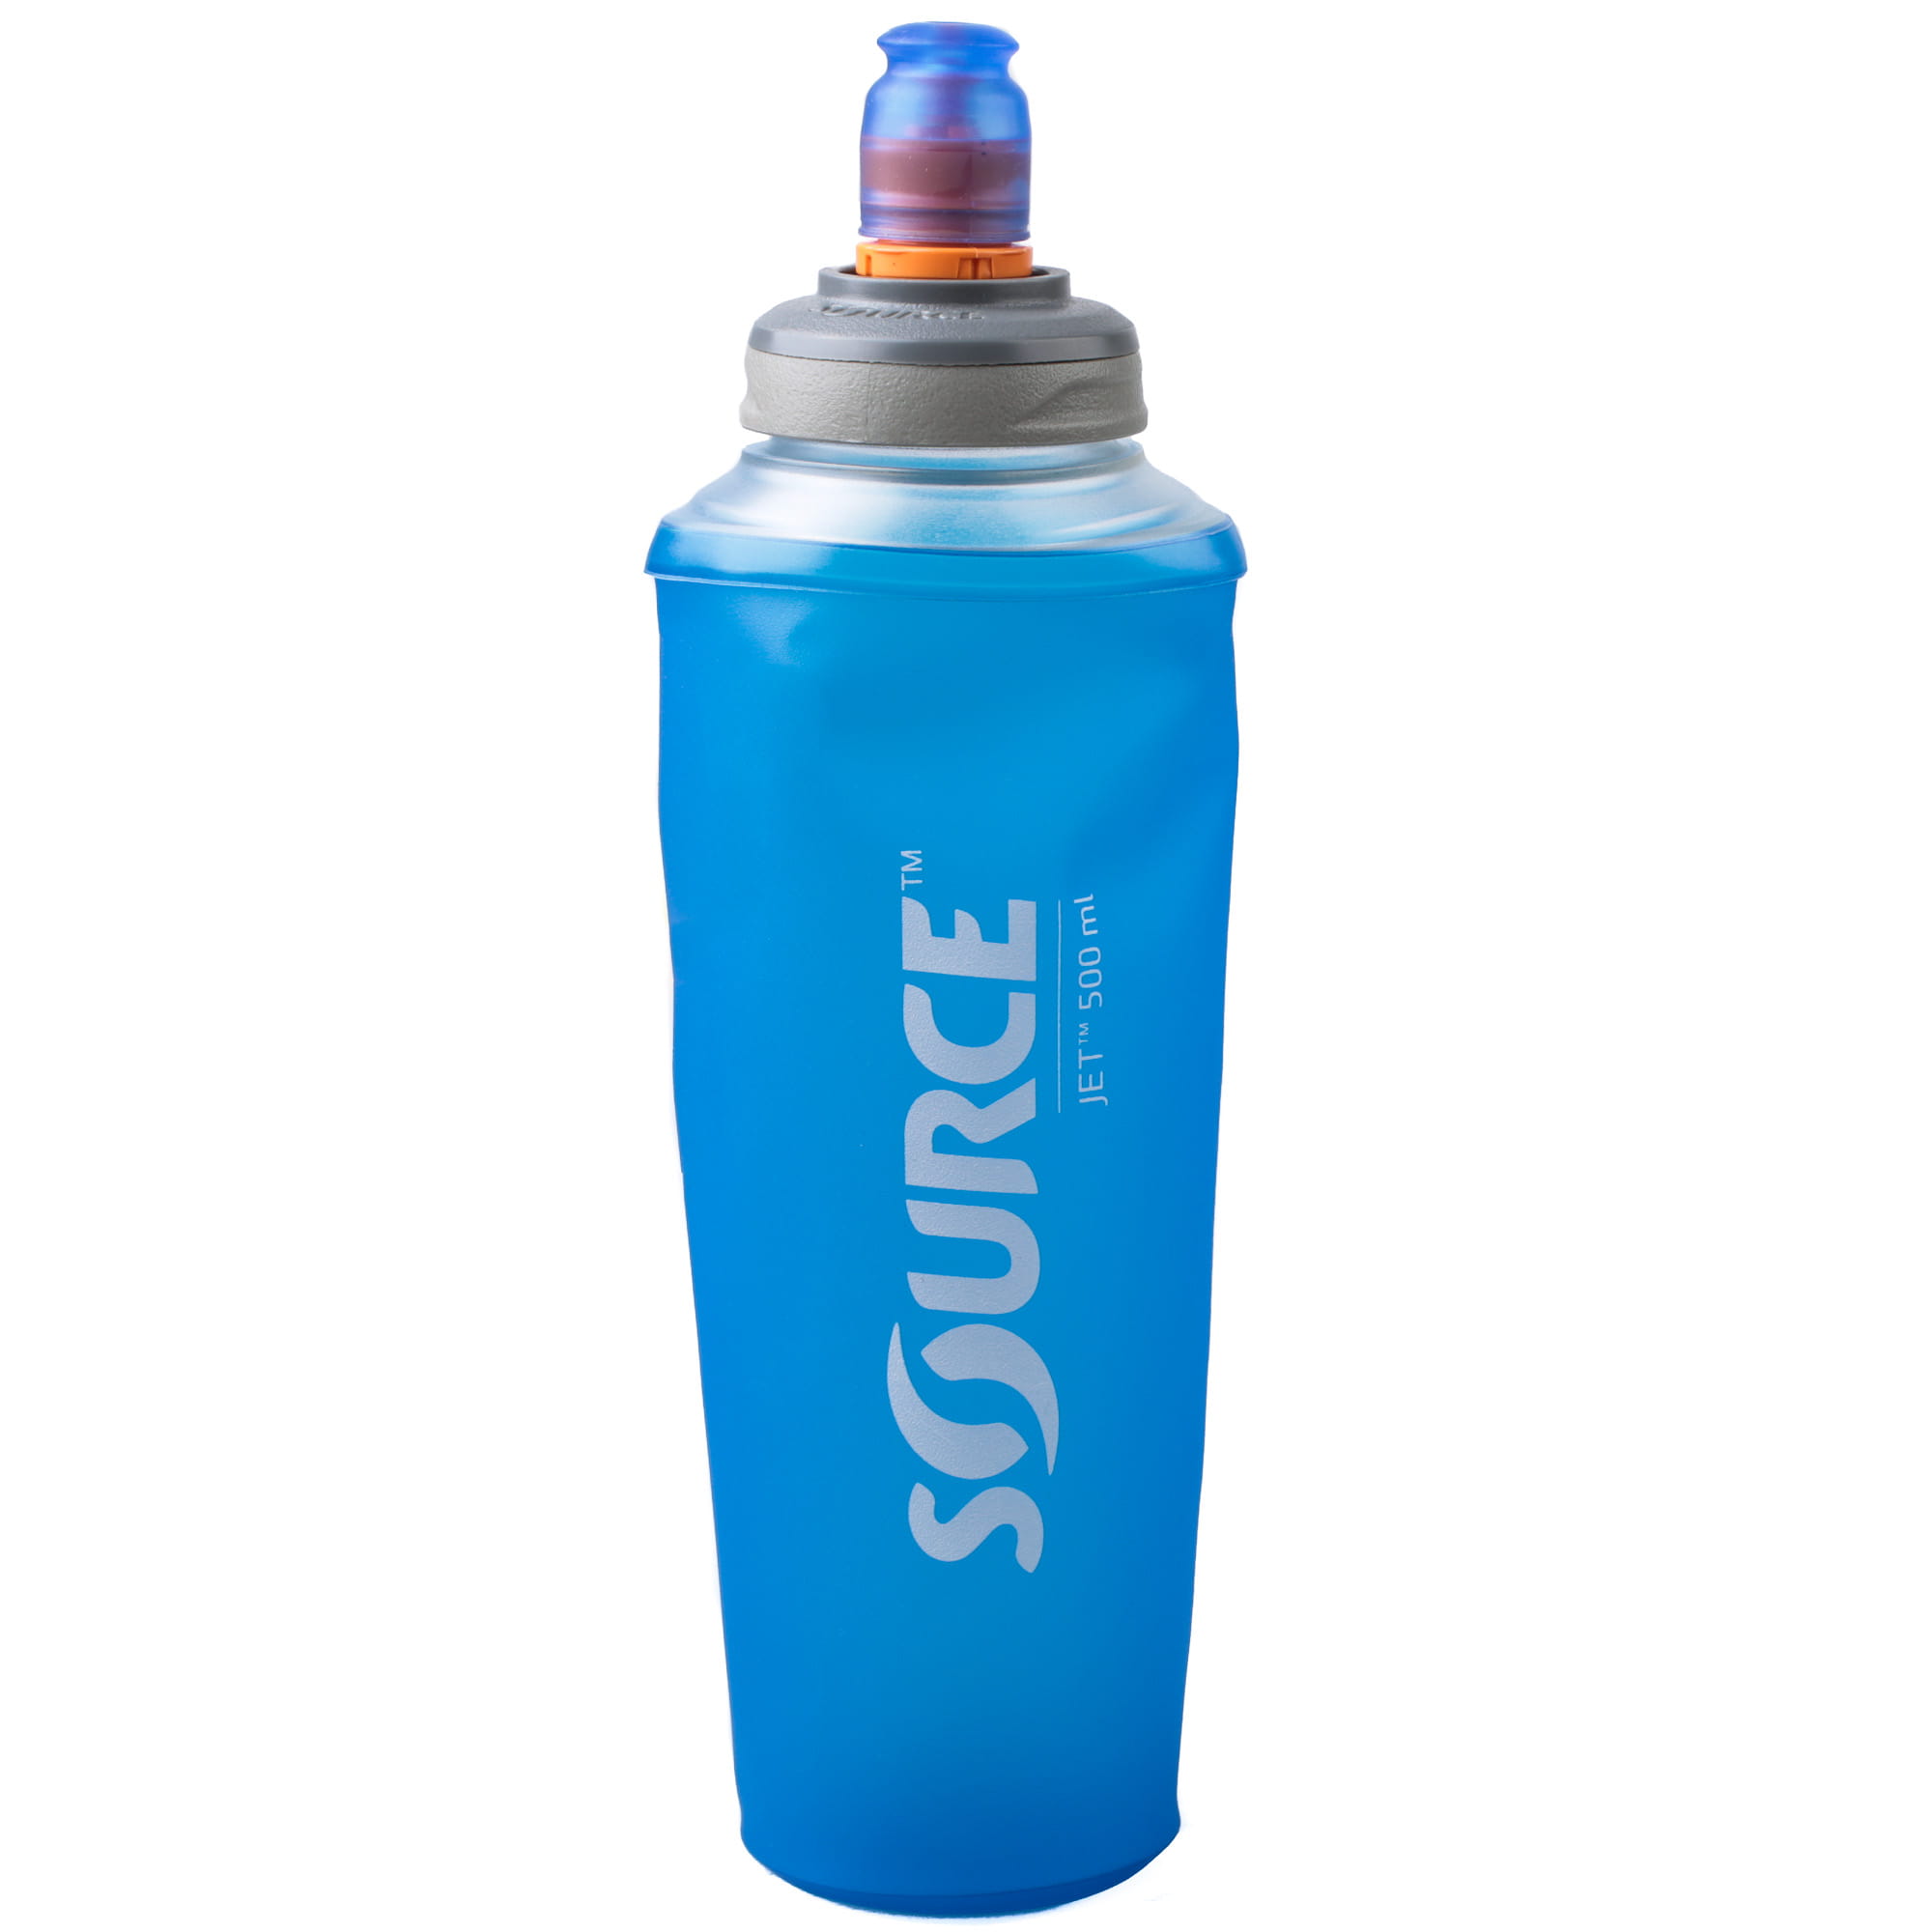 SOURCE Jet faltbare Trinkflasche ohne PVC und BPA - 0,5 L, Blau, Trinkflaschen, Trinkflaschen & Trinksysteme, Zubehör